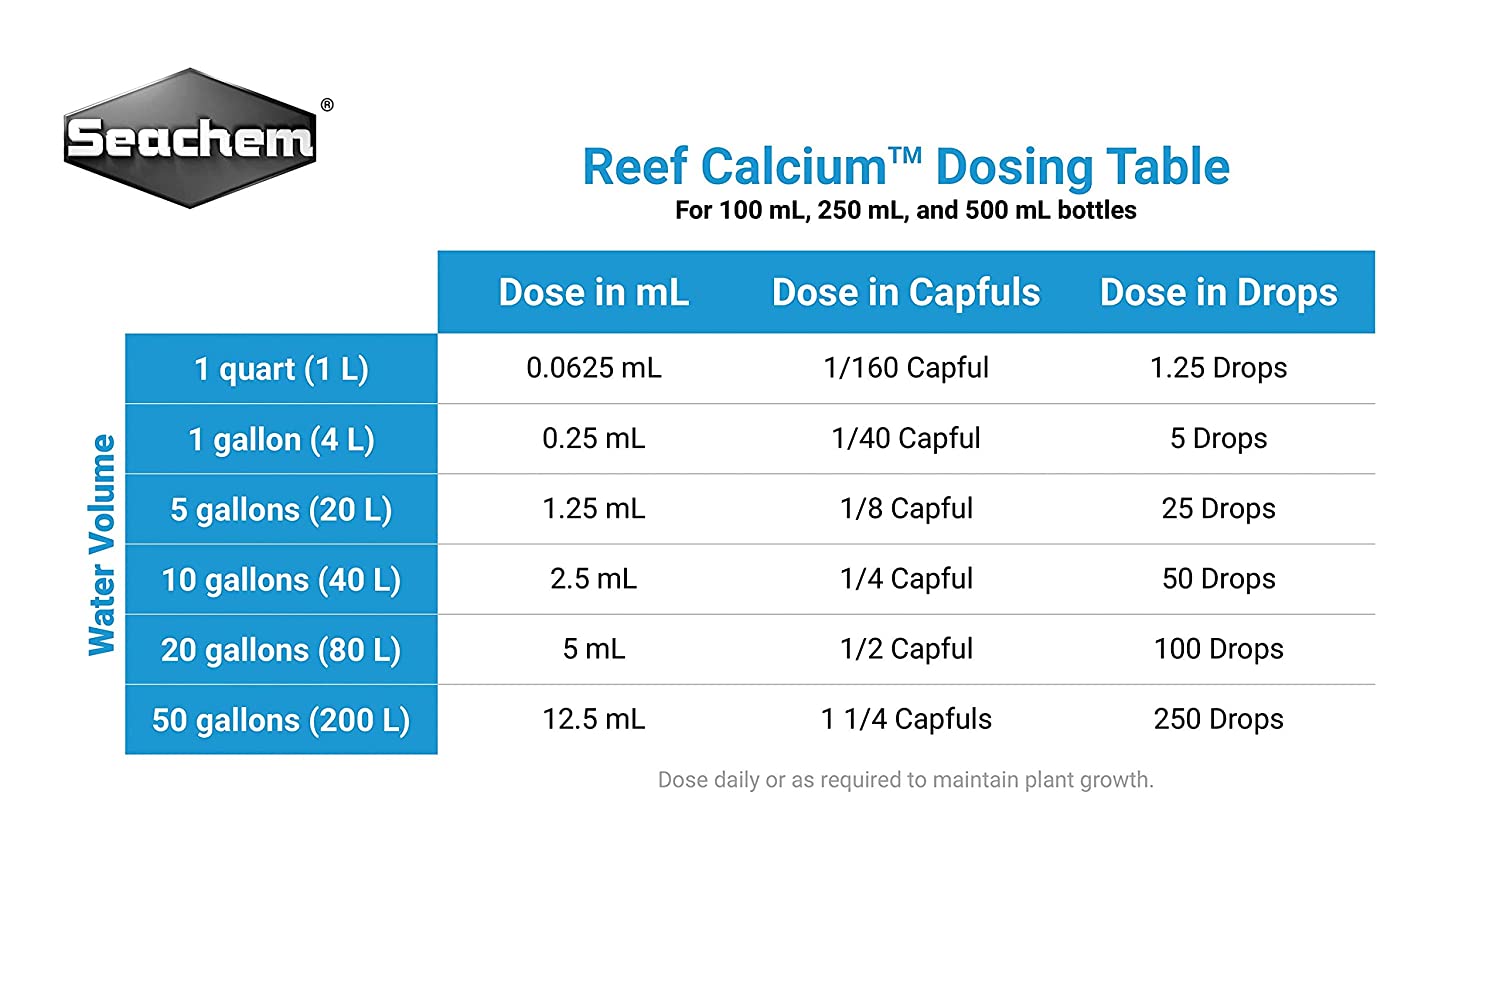 SEACHEM LABORATORIES Reef Advantage Calcium 500 Gram